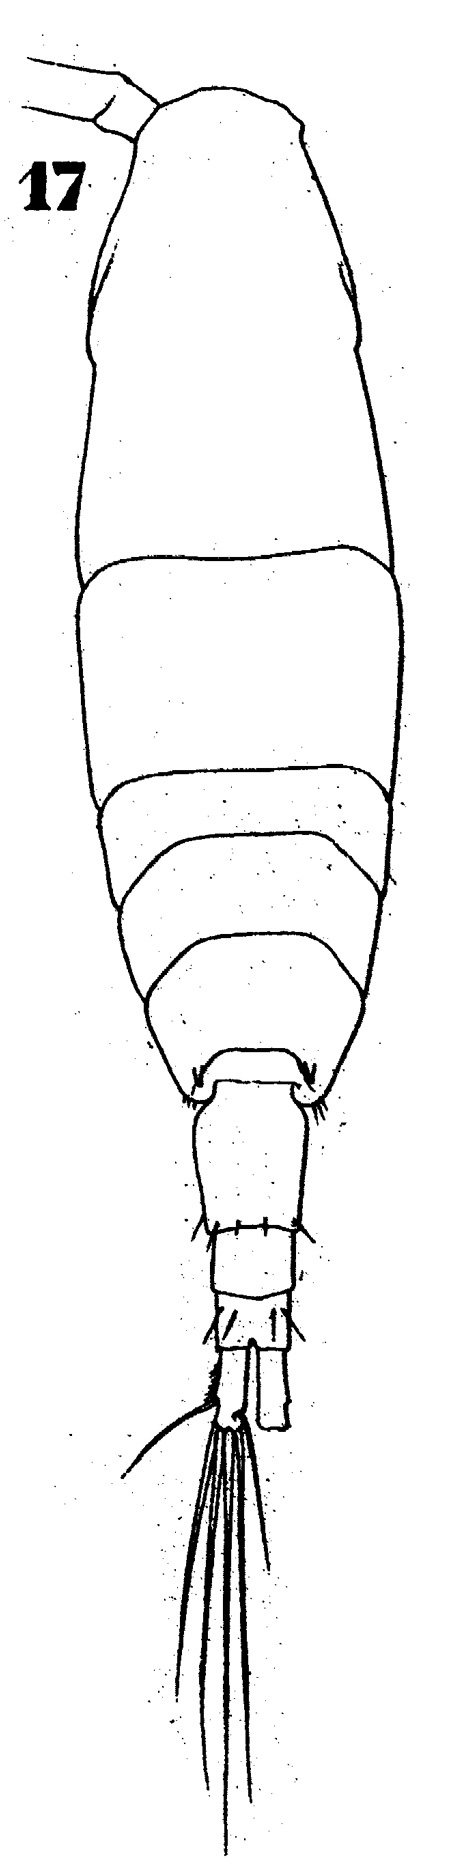 Espèce Acartia (Acartiura) longiremis - Planche 3 de figures morphologiques